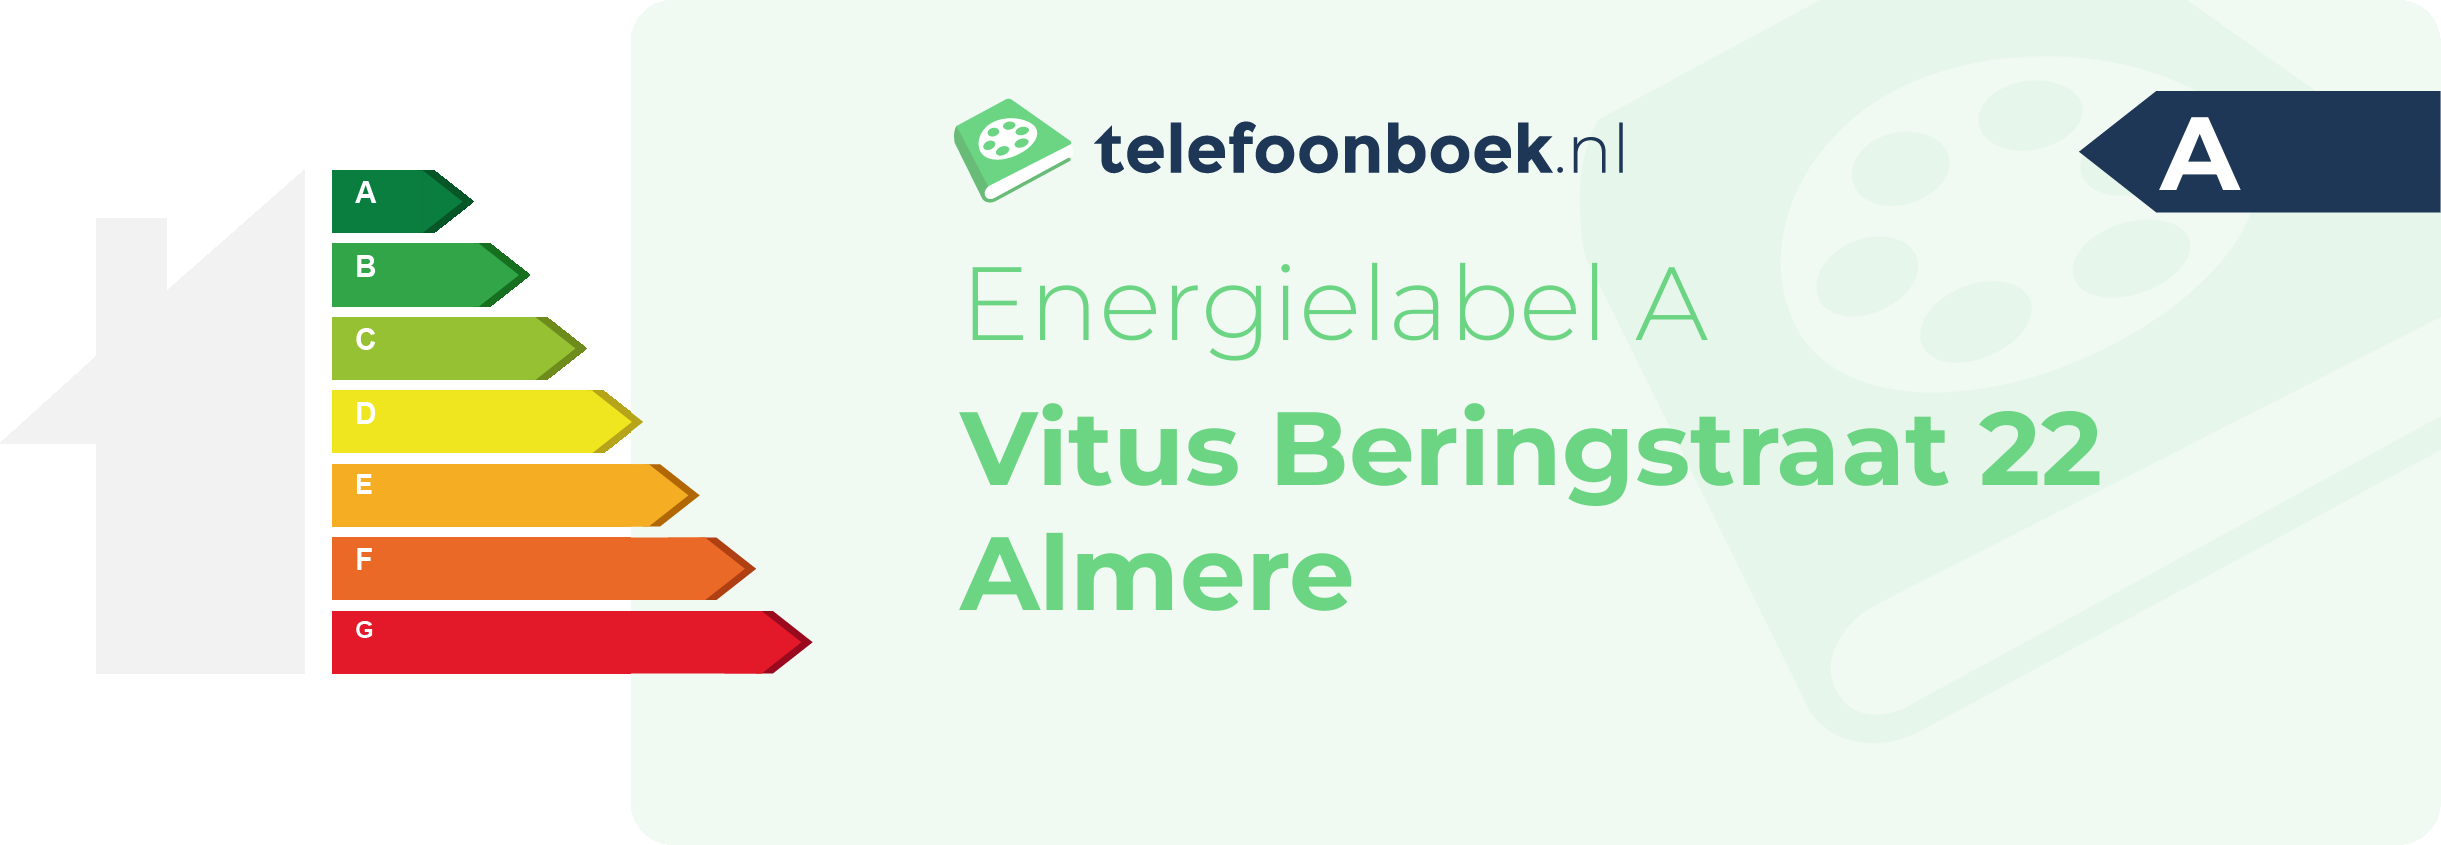 Energielabel Vitus Beringstraat 22 Almere